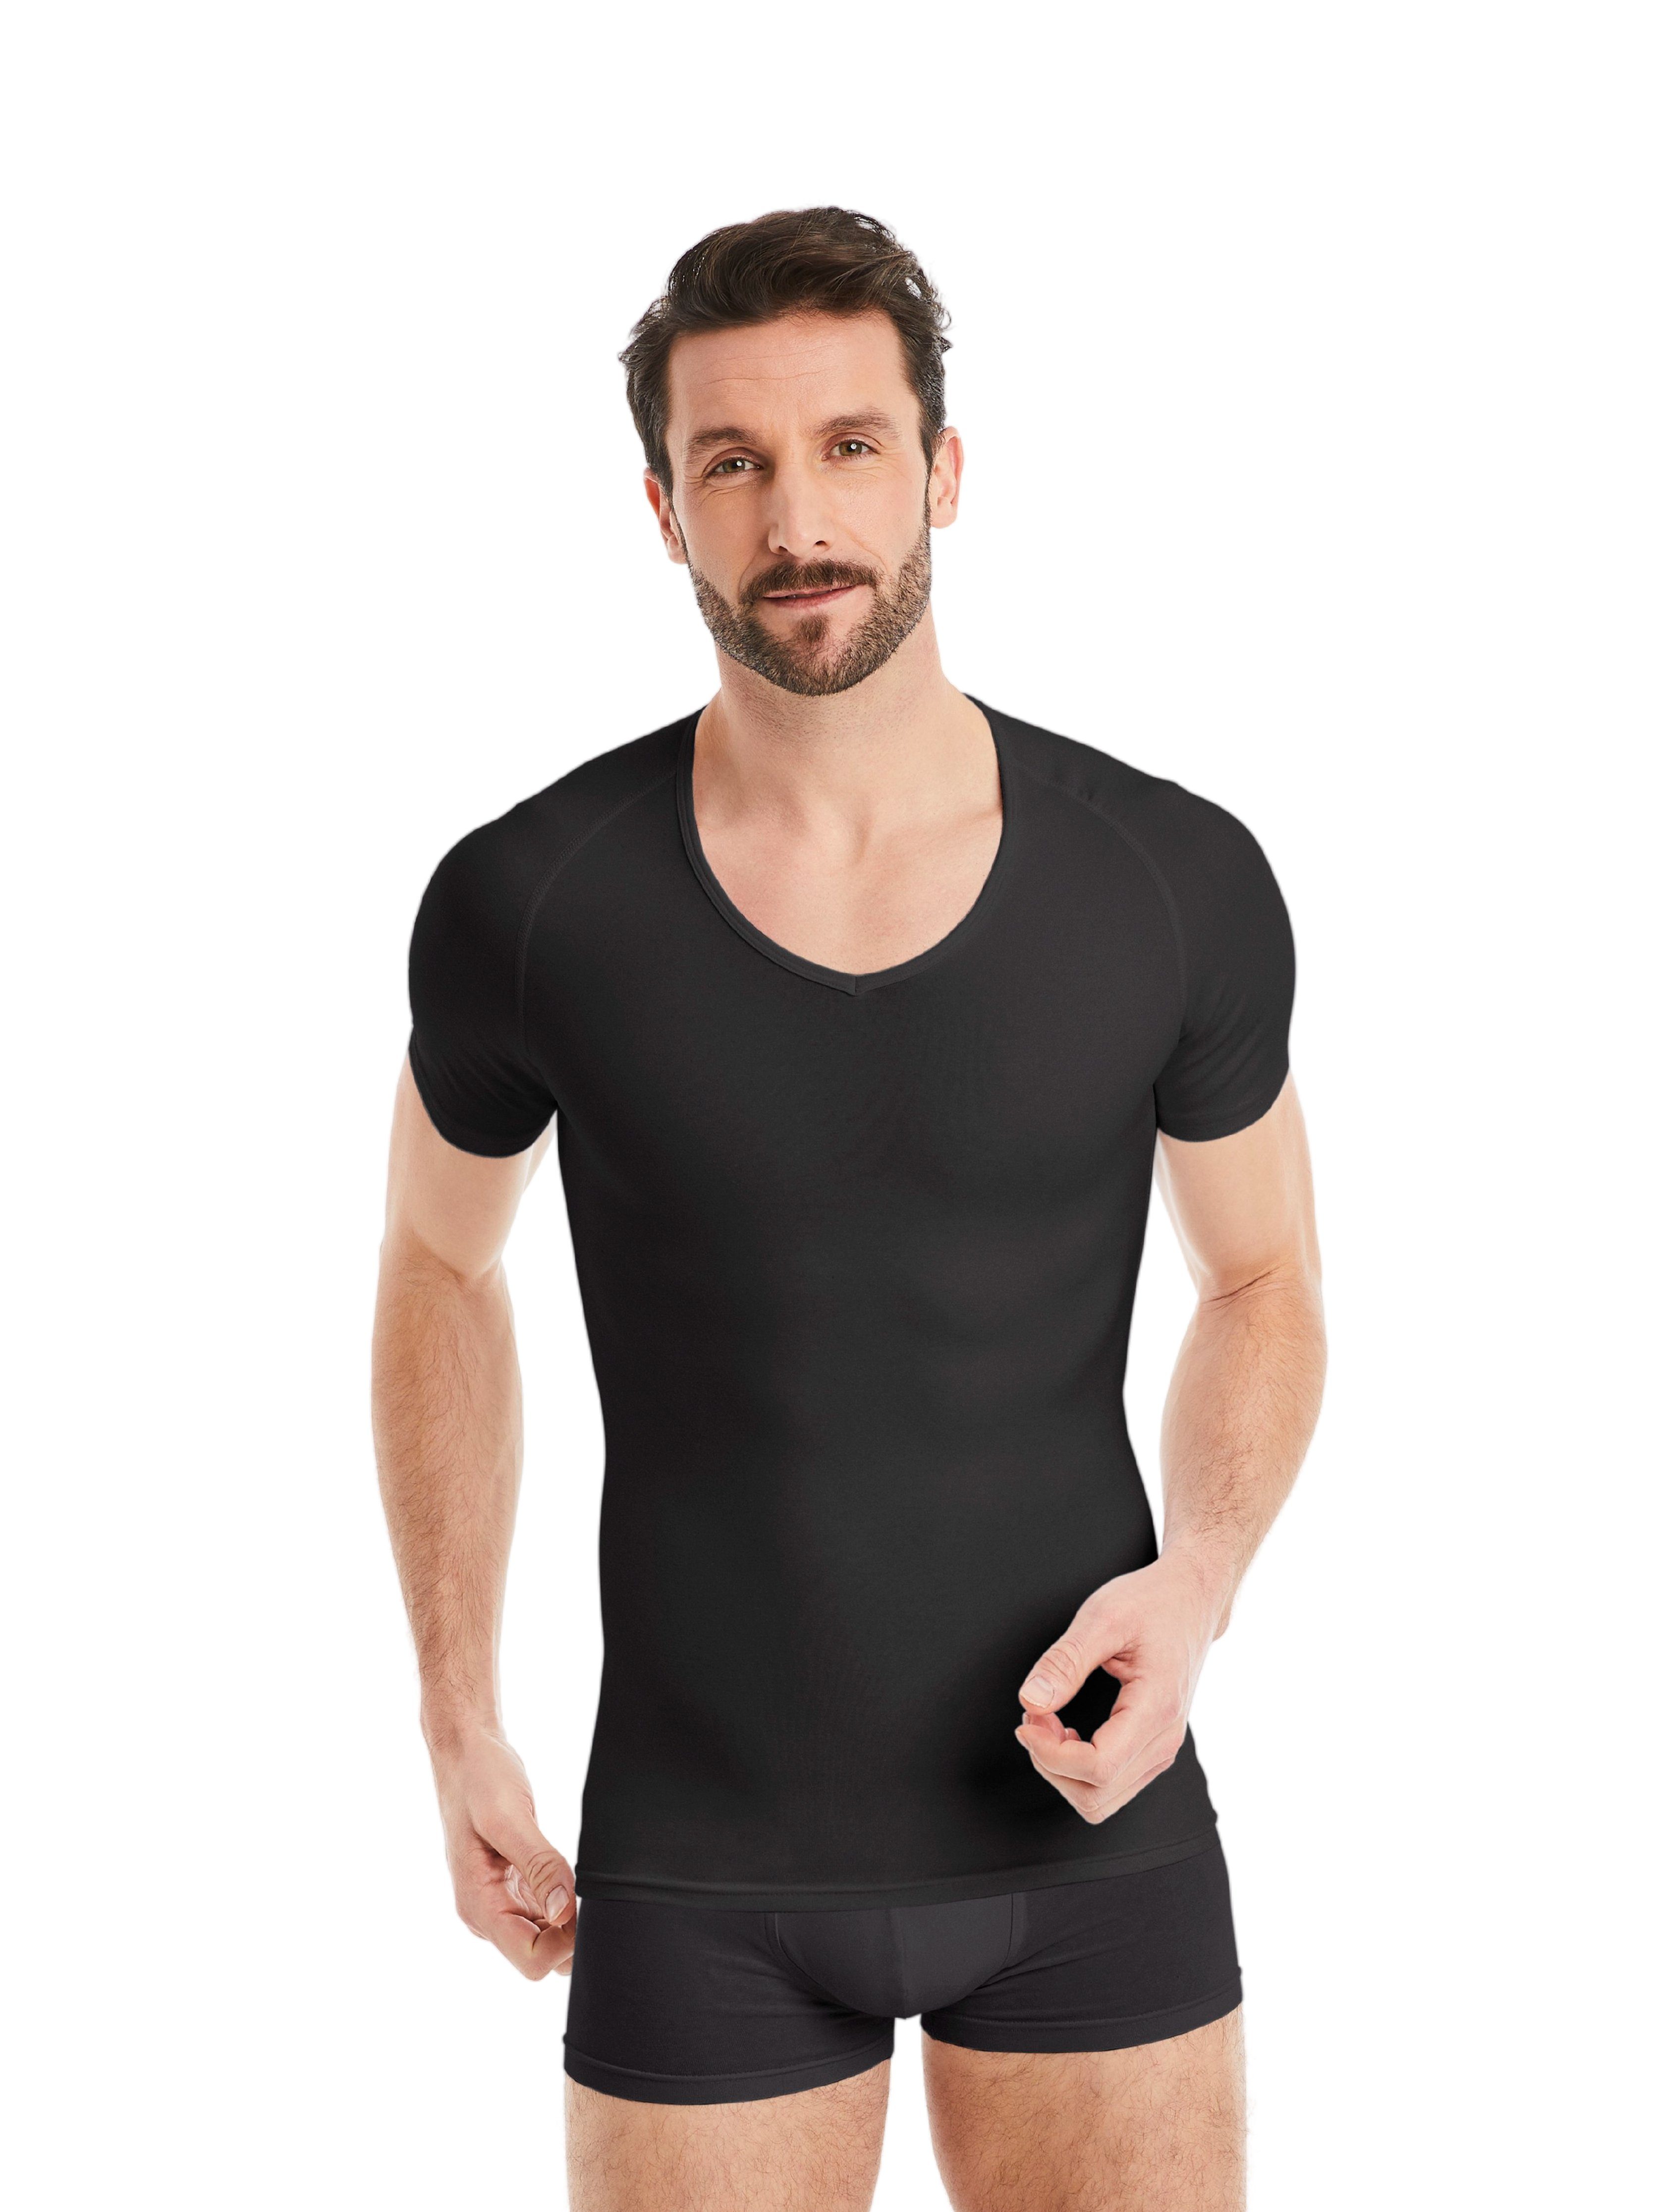 FINN Design Shapinghemd Shapewear Kompressions-Unterhemd Kurzarm Herren  extra starke Kompression, eine Kleidergröße weniger